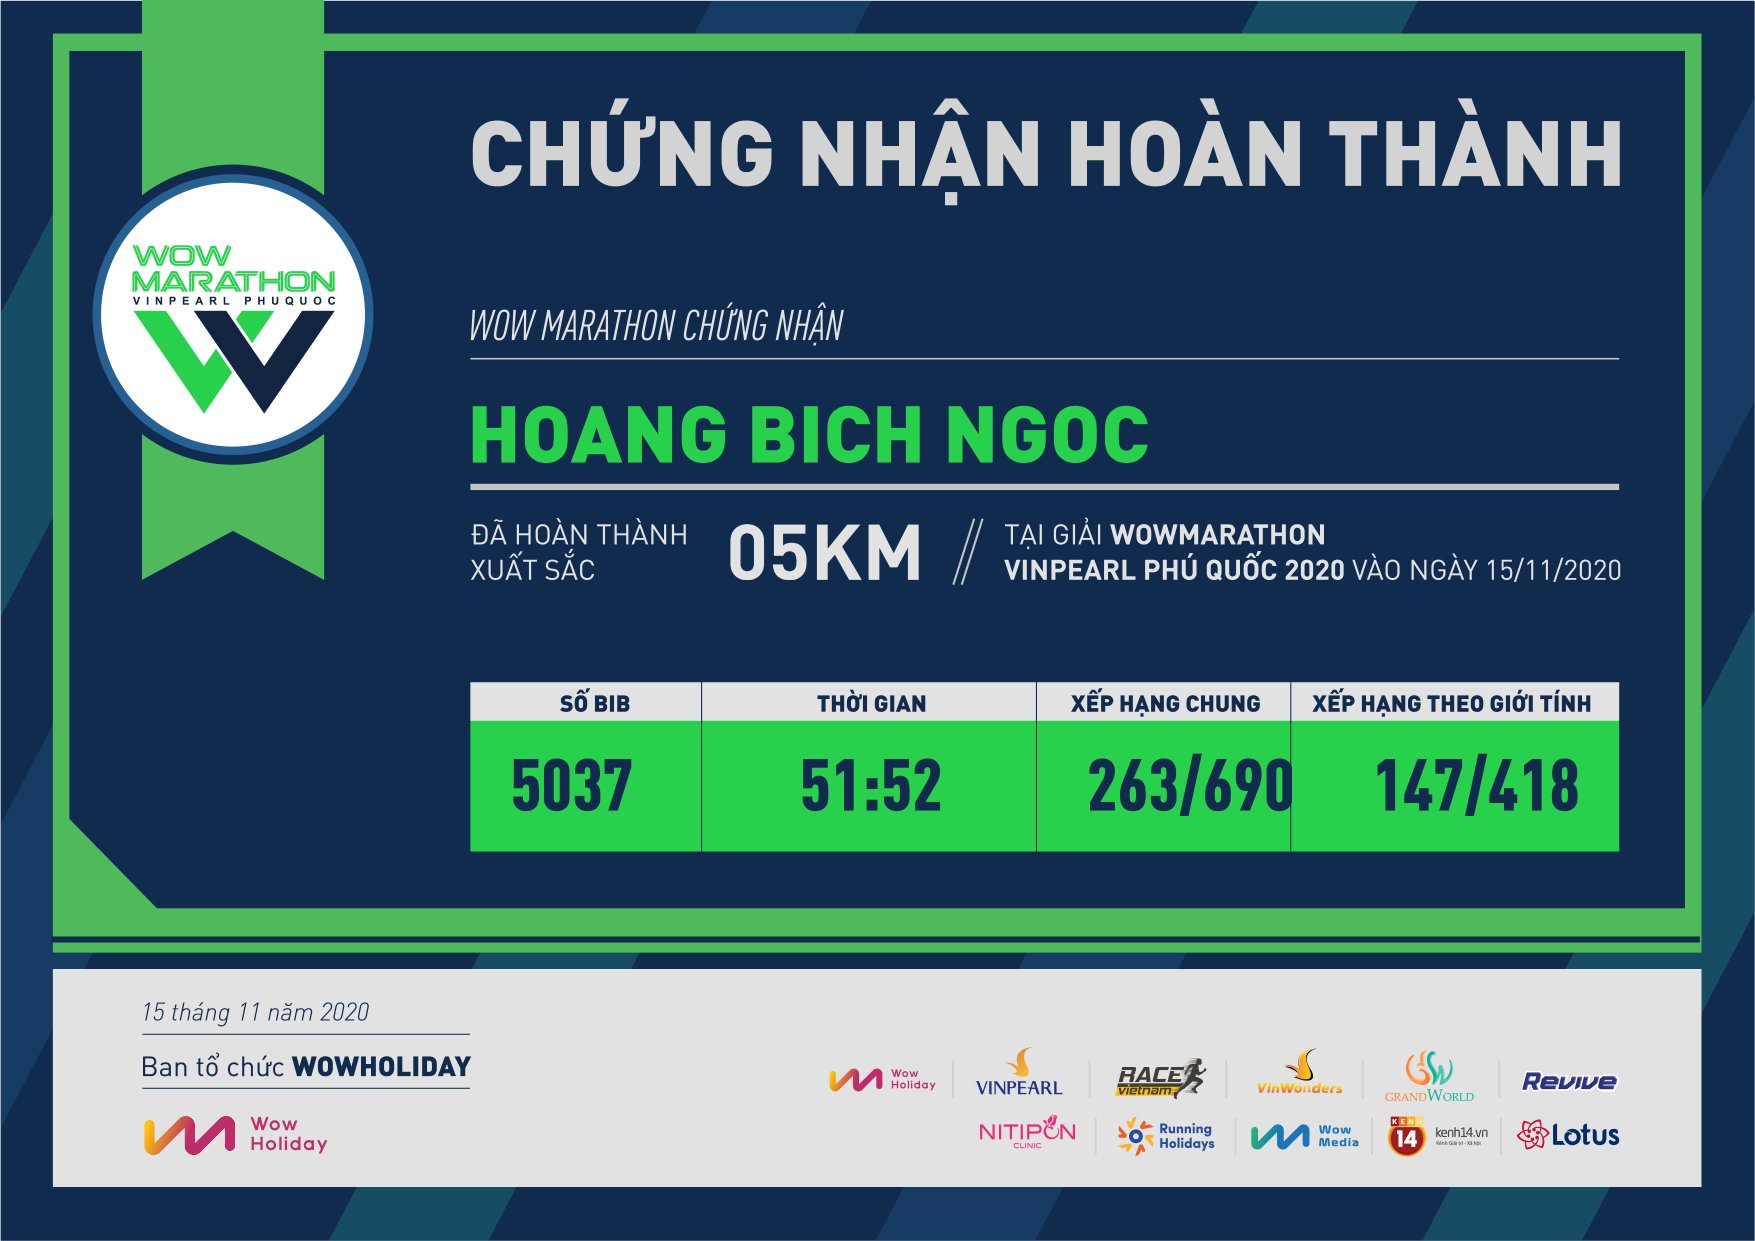 5037 - Hoang Bich Ngoc